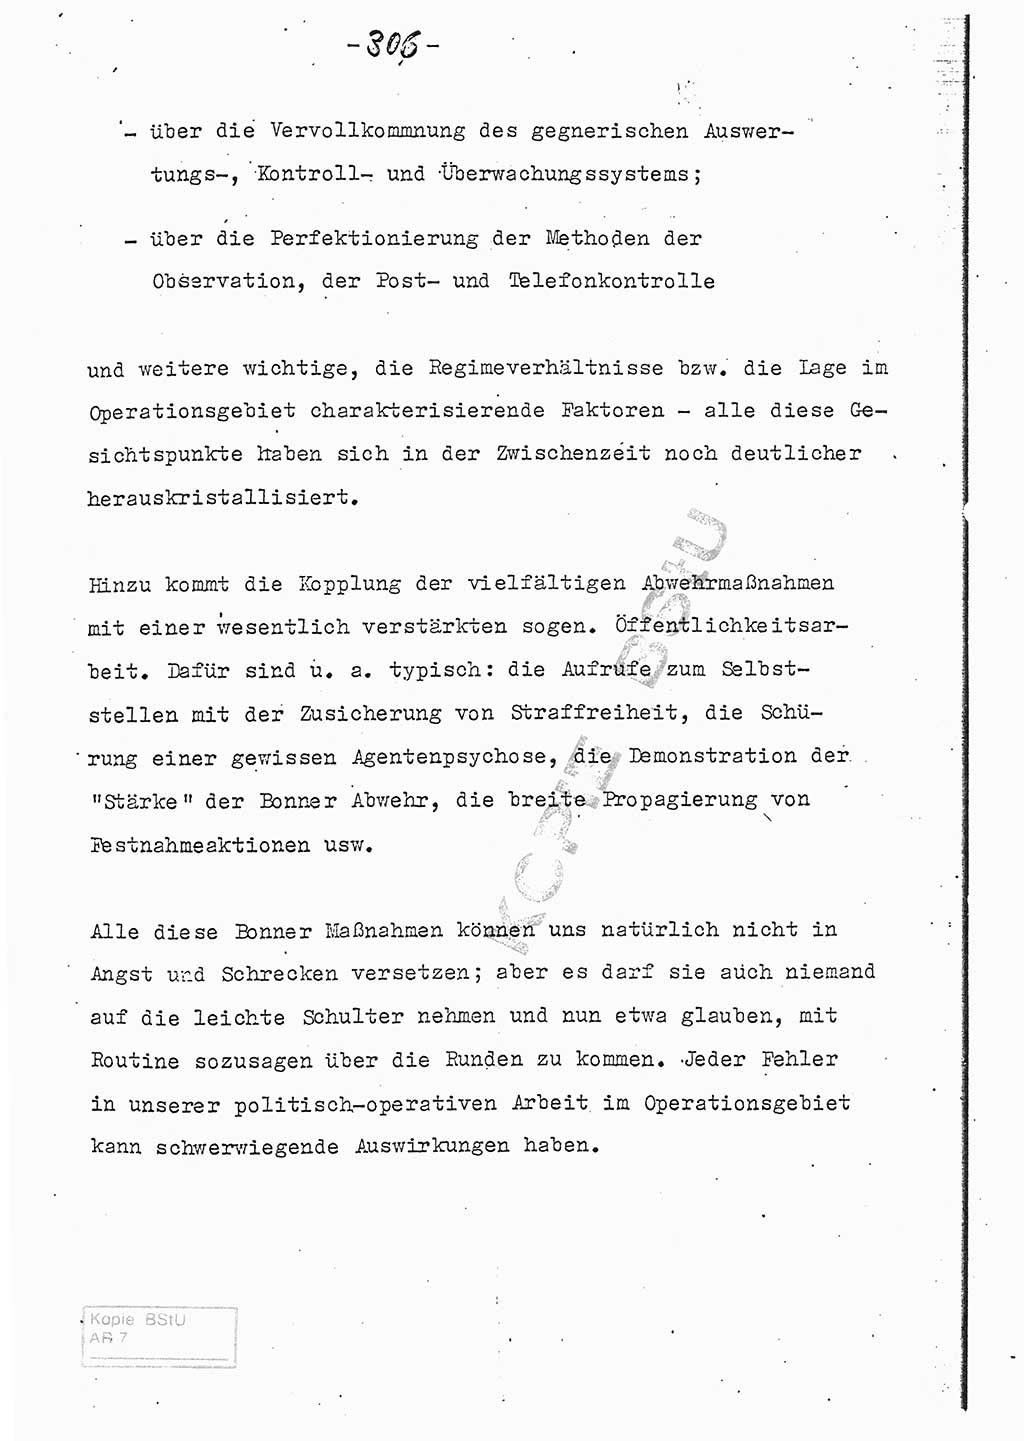 Referat (Entwurf) des Genossen Minister (Generaloberst Erich Mielke) auf der Dienstkonferenz 1972, Ministerium für Staatssicherheit (MfS) [Deutsche Demokratische Republik (DDR)], Der Minister, Geheime Verschlußsache (GVS) 008-150/72, Berlin 25.2.1972, Seite 306 (Ref. Entw. DK MfS DDR Min. GVS 008-150/72 1972, S. 306)